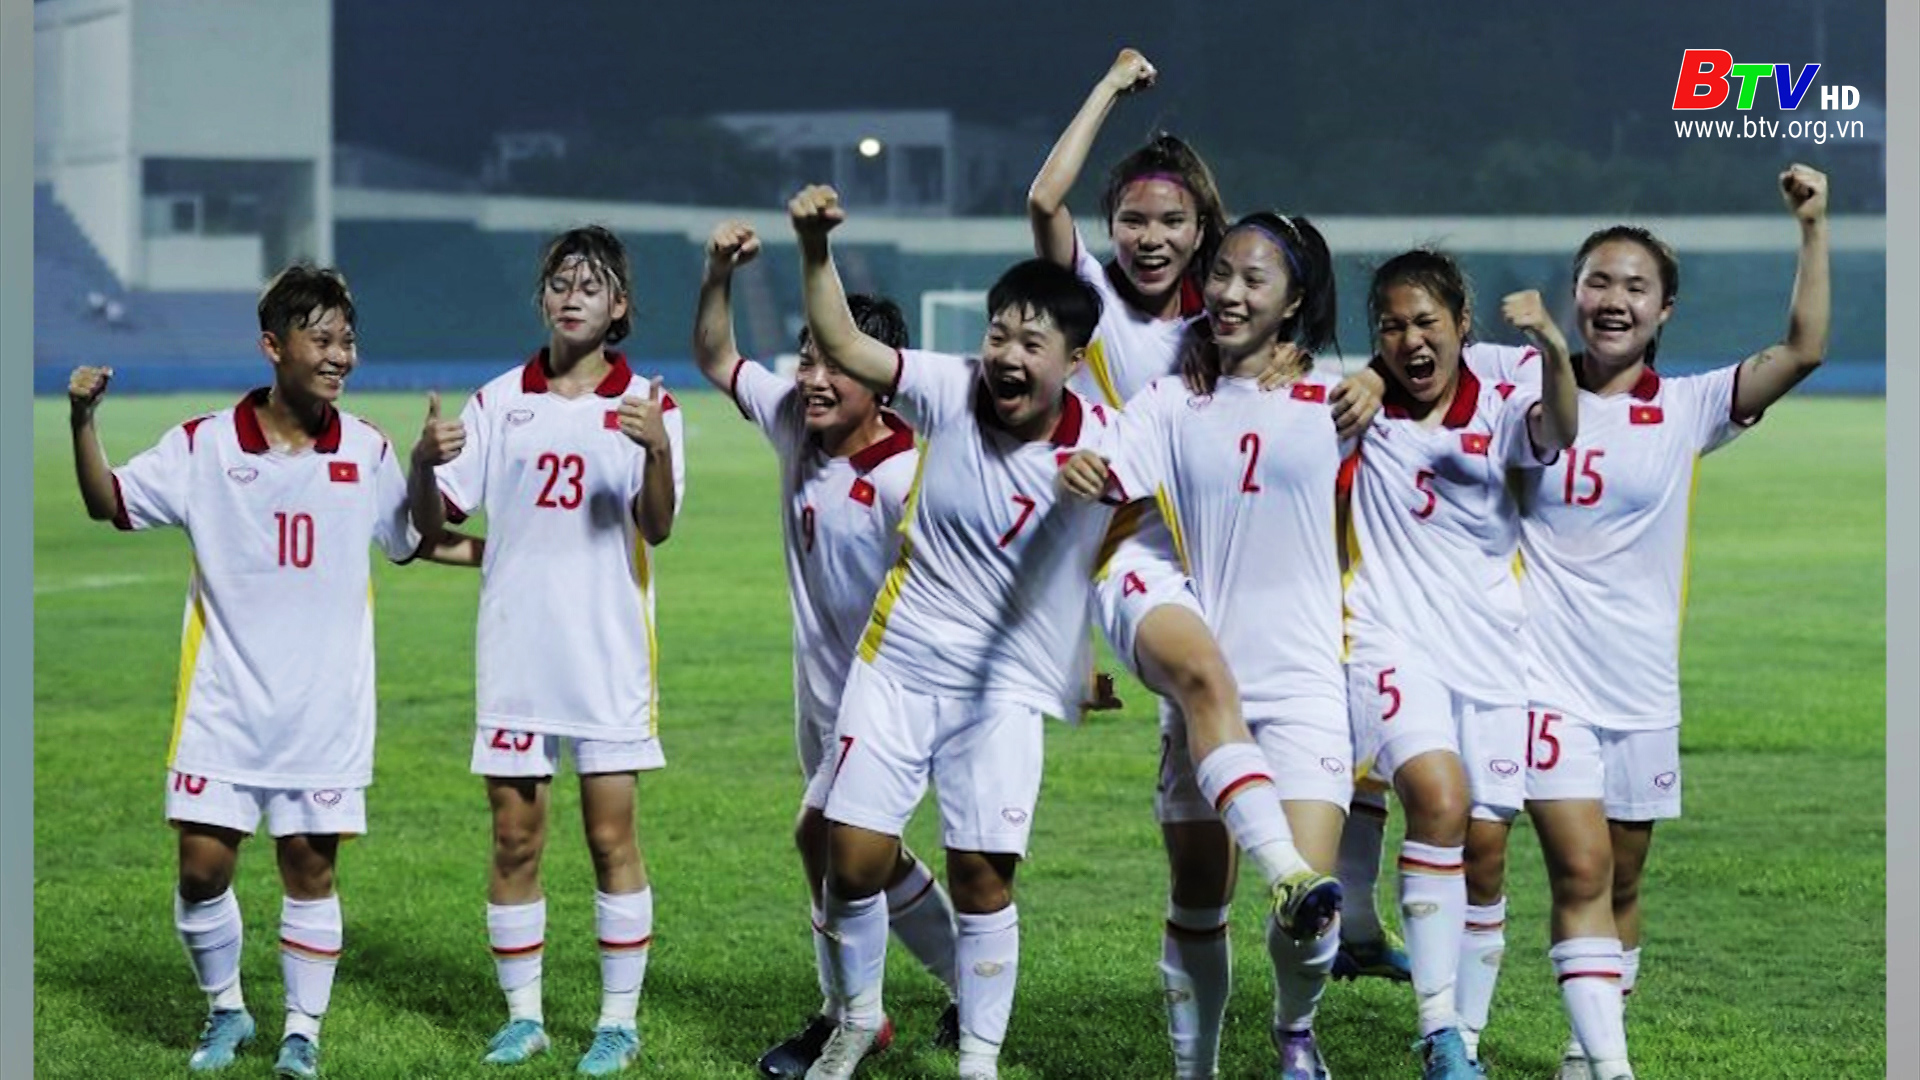 U20 nữ giành quyền dự VCK U20 nữ châu Á 2024